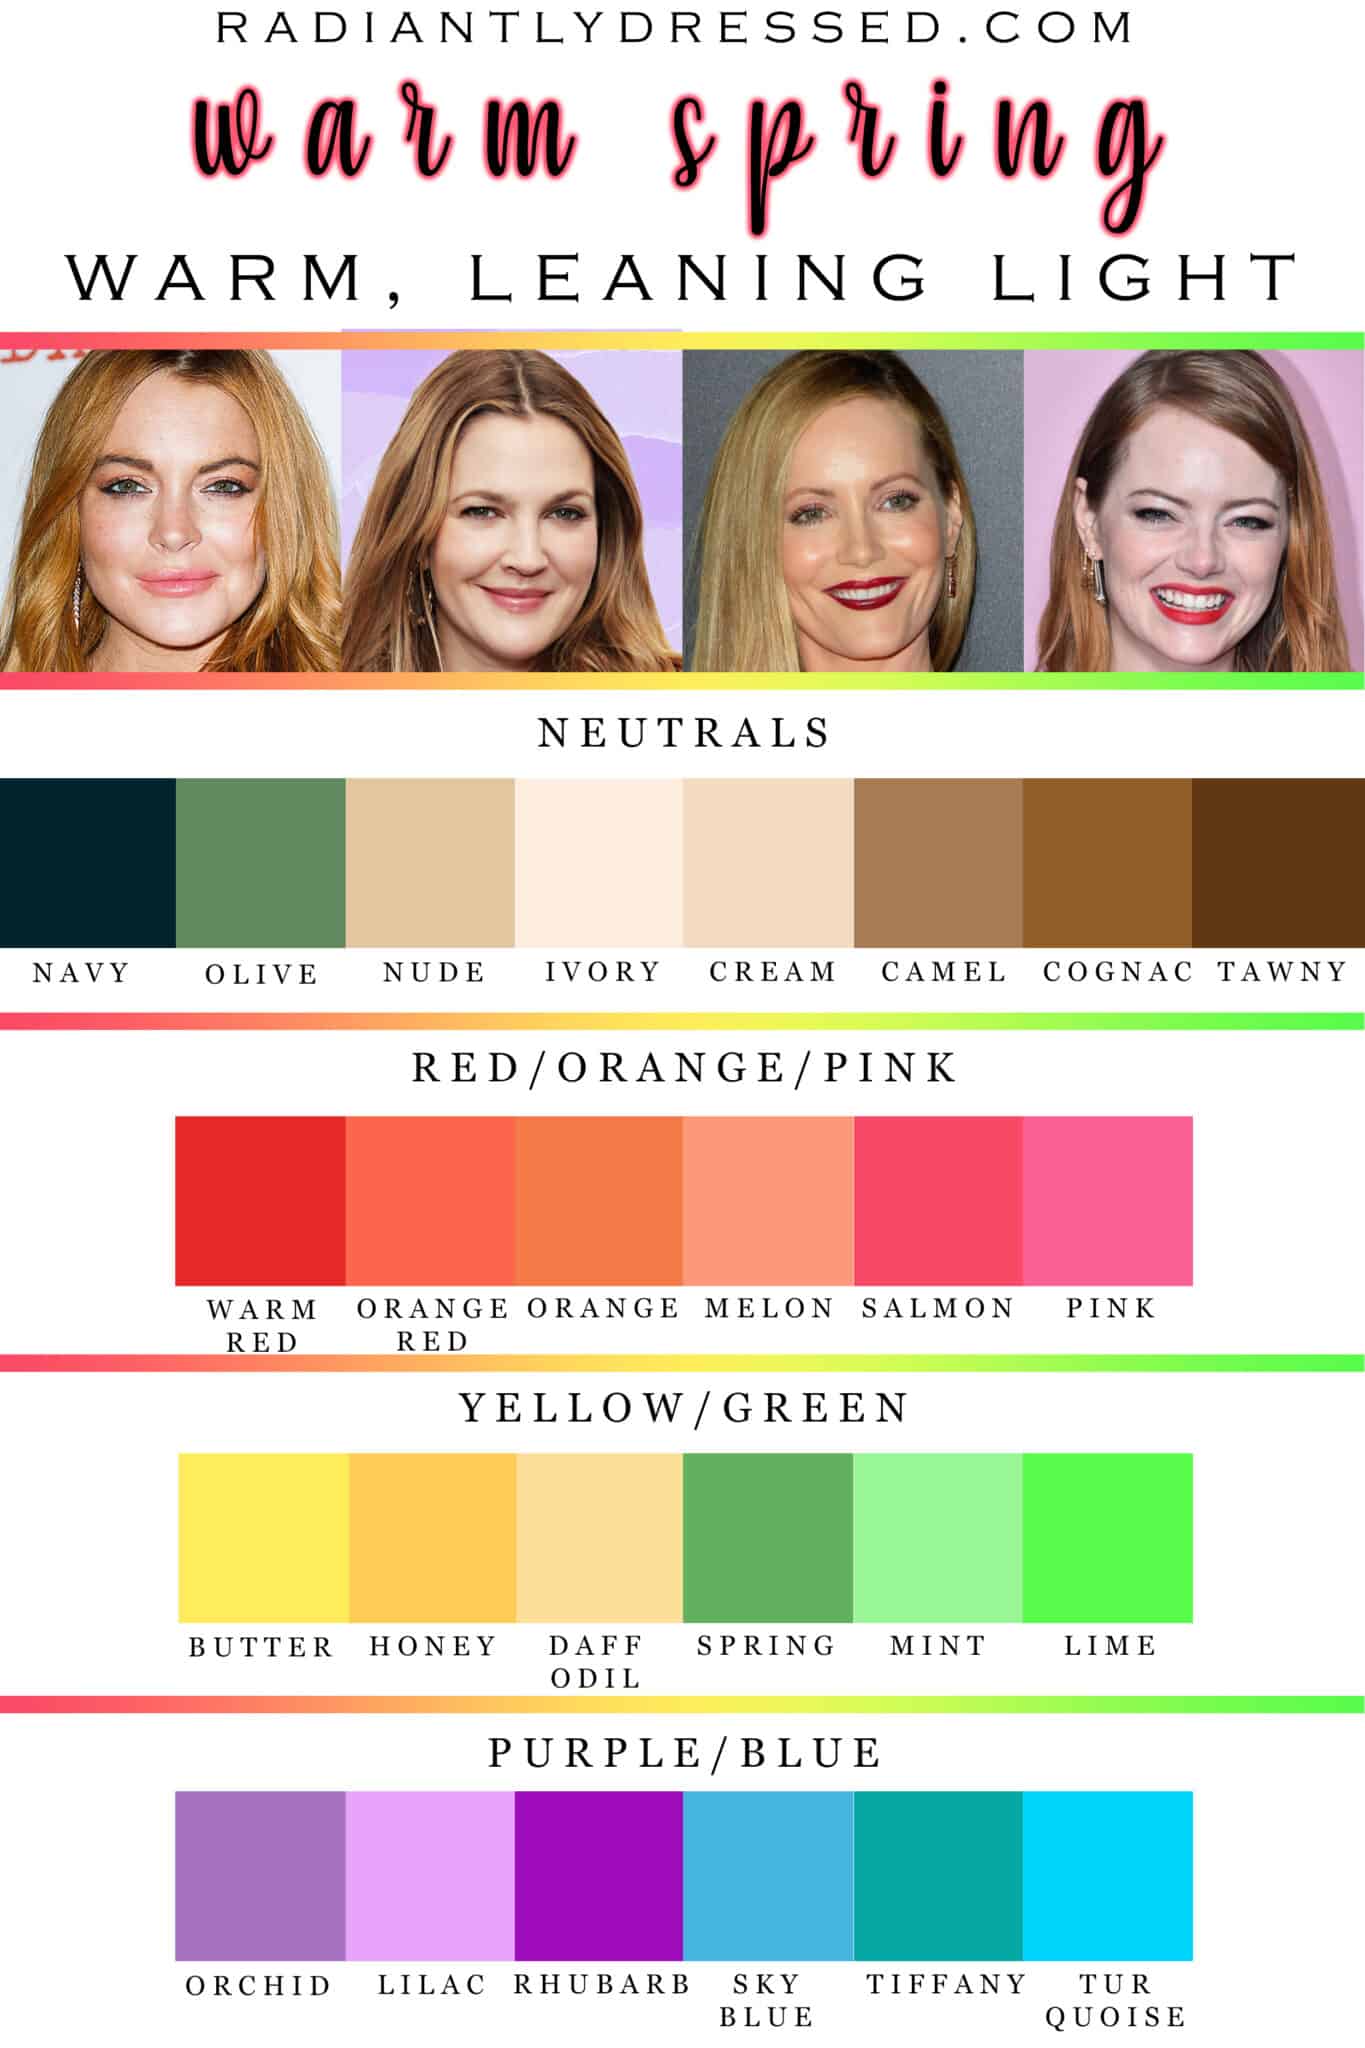 Color Palette For Spring - Image to u